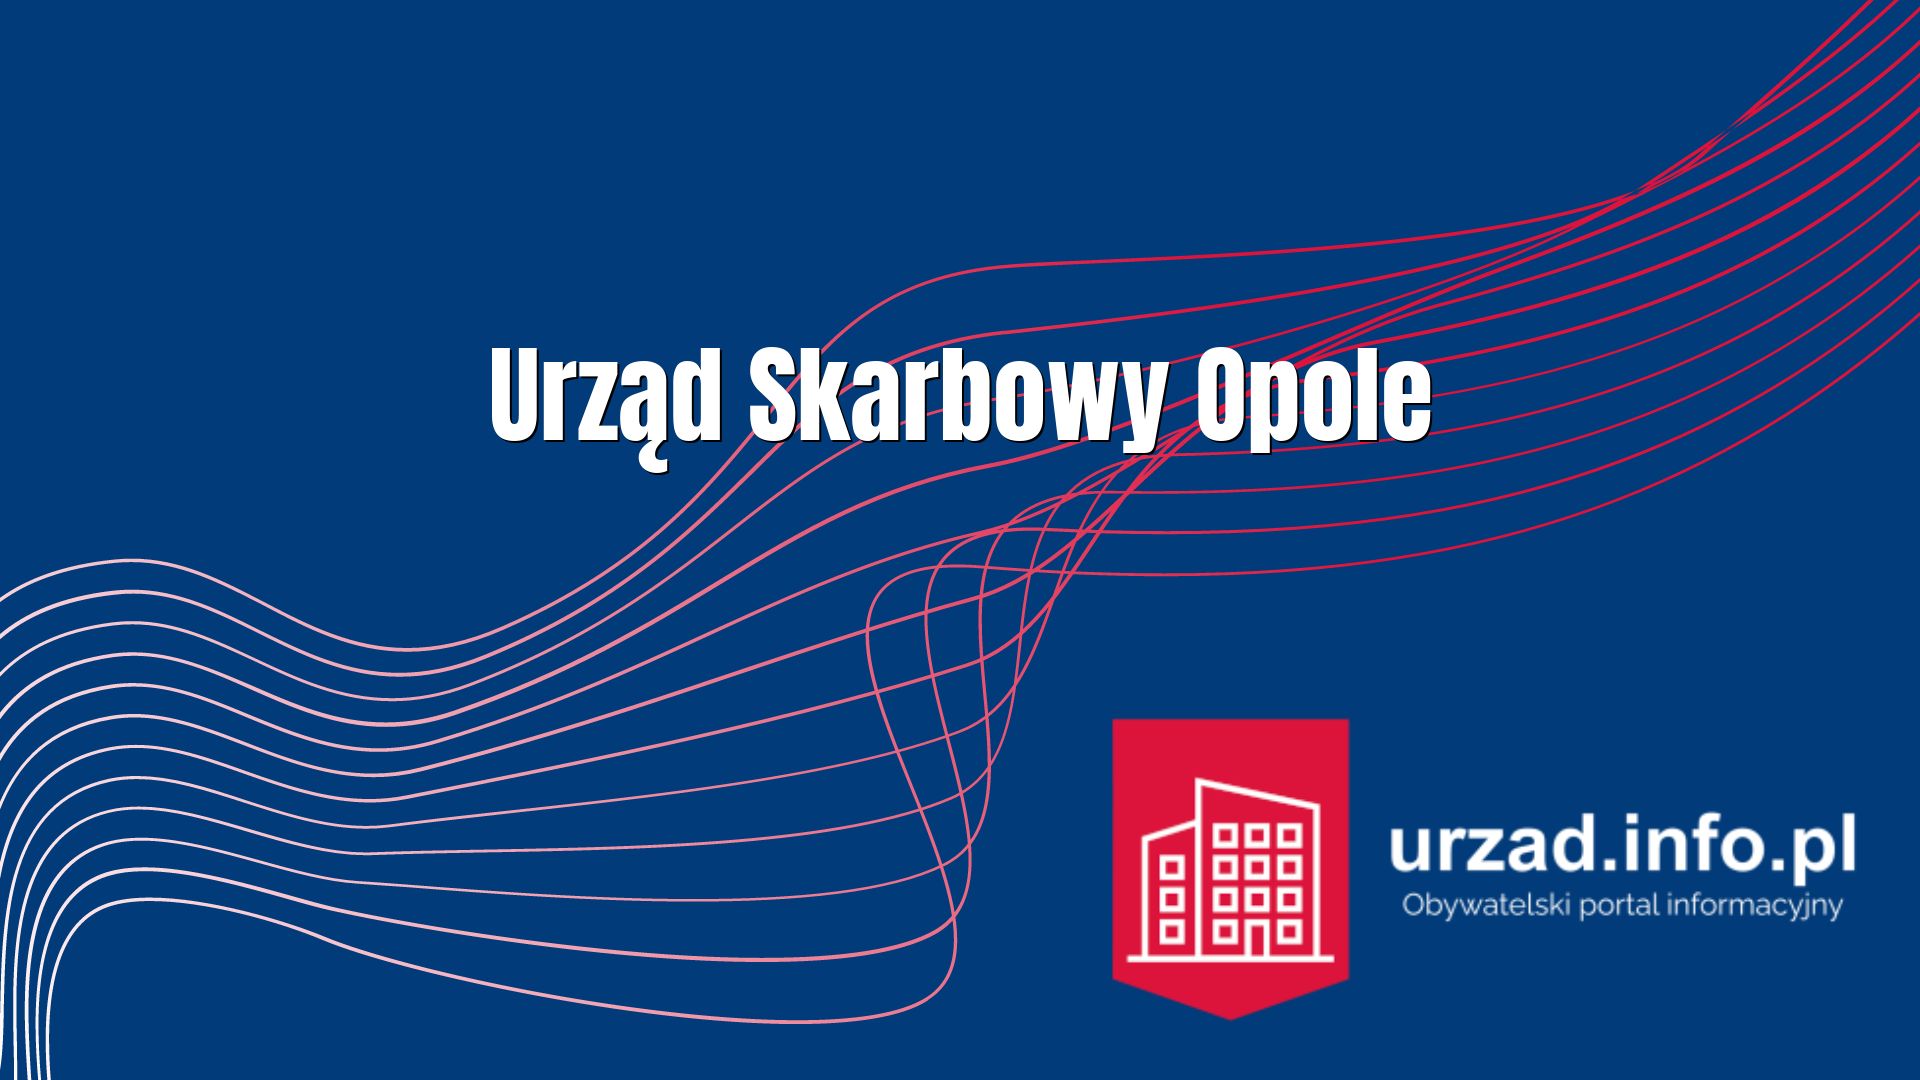 Urząd Skarbowy Opole